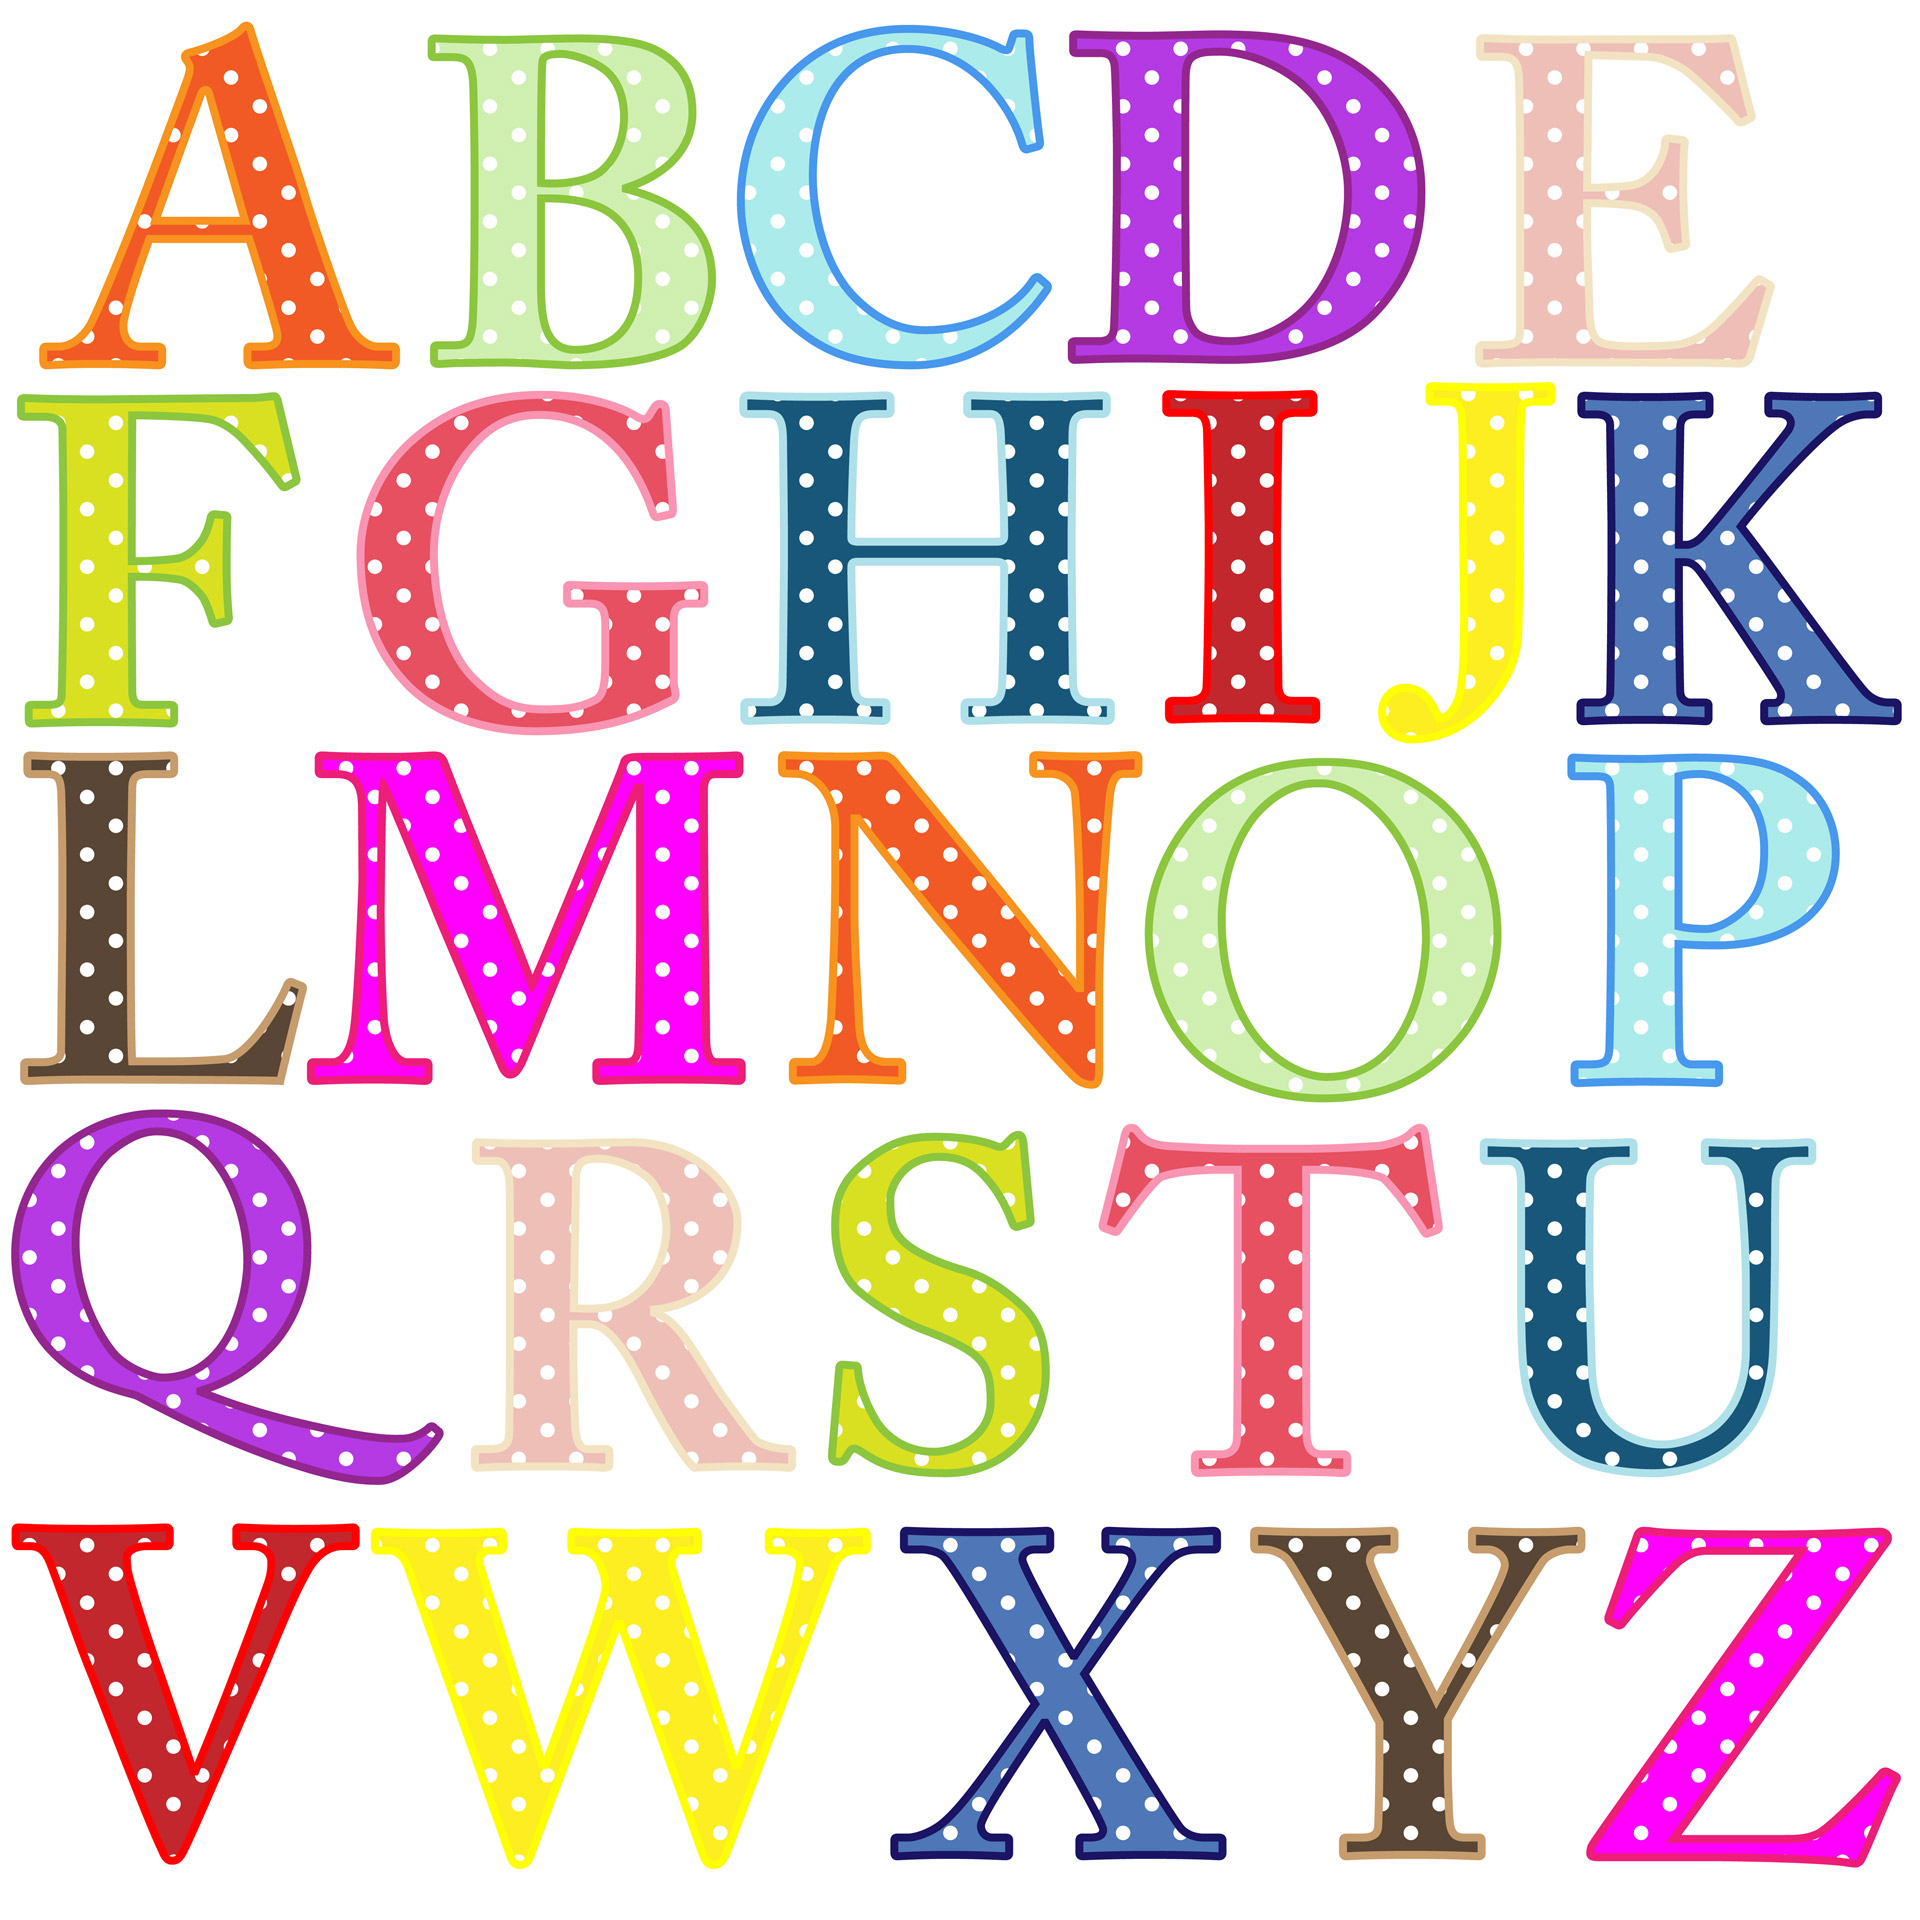 Alphabet letters clip art free stock photo public domain pictures 2